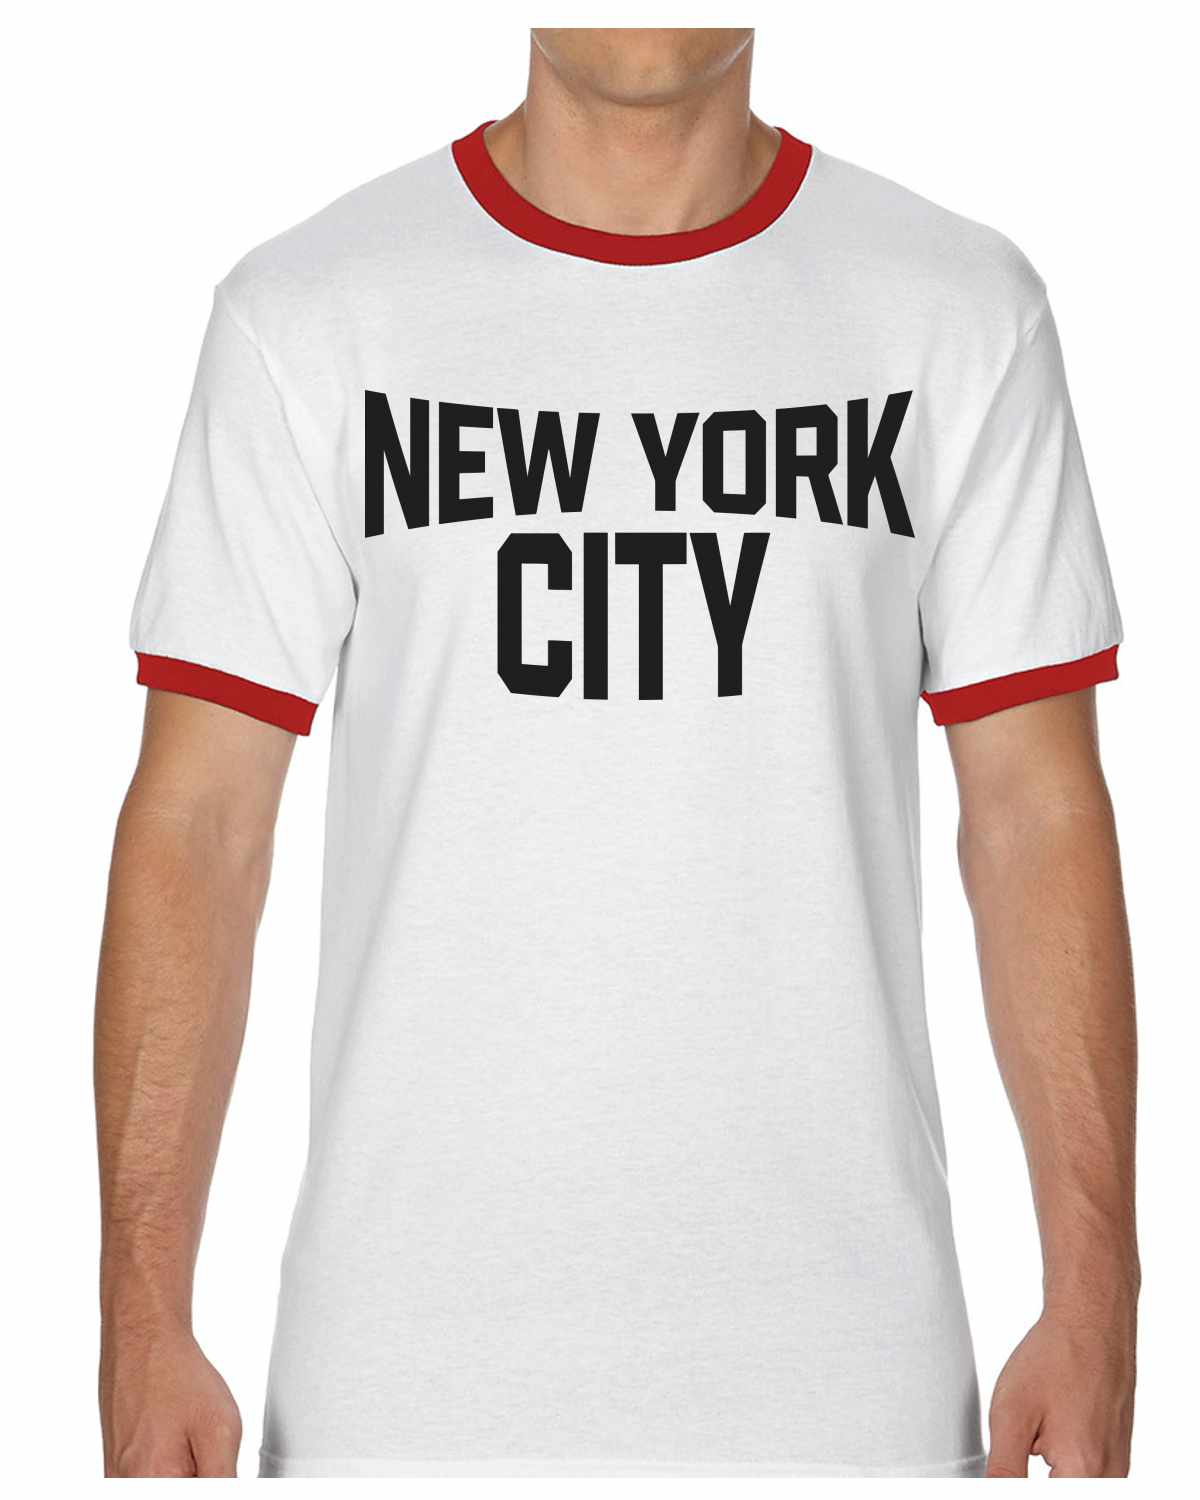 New York City on Ringer Shirt